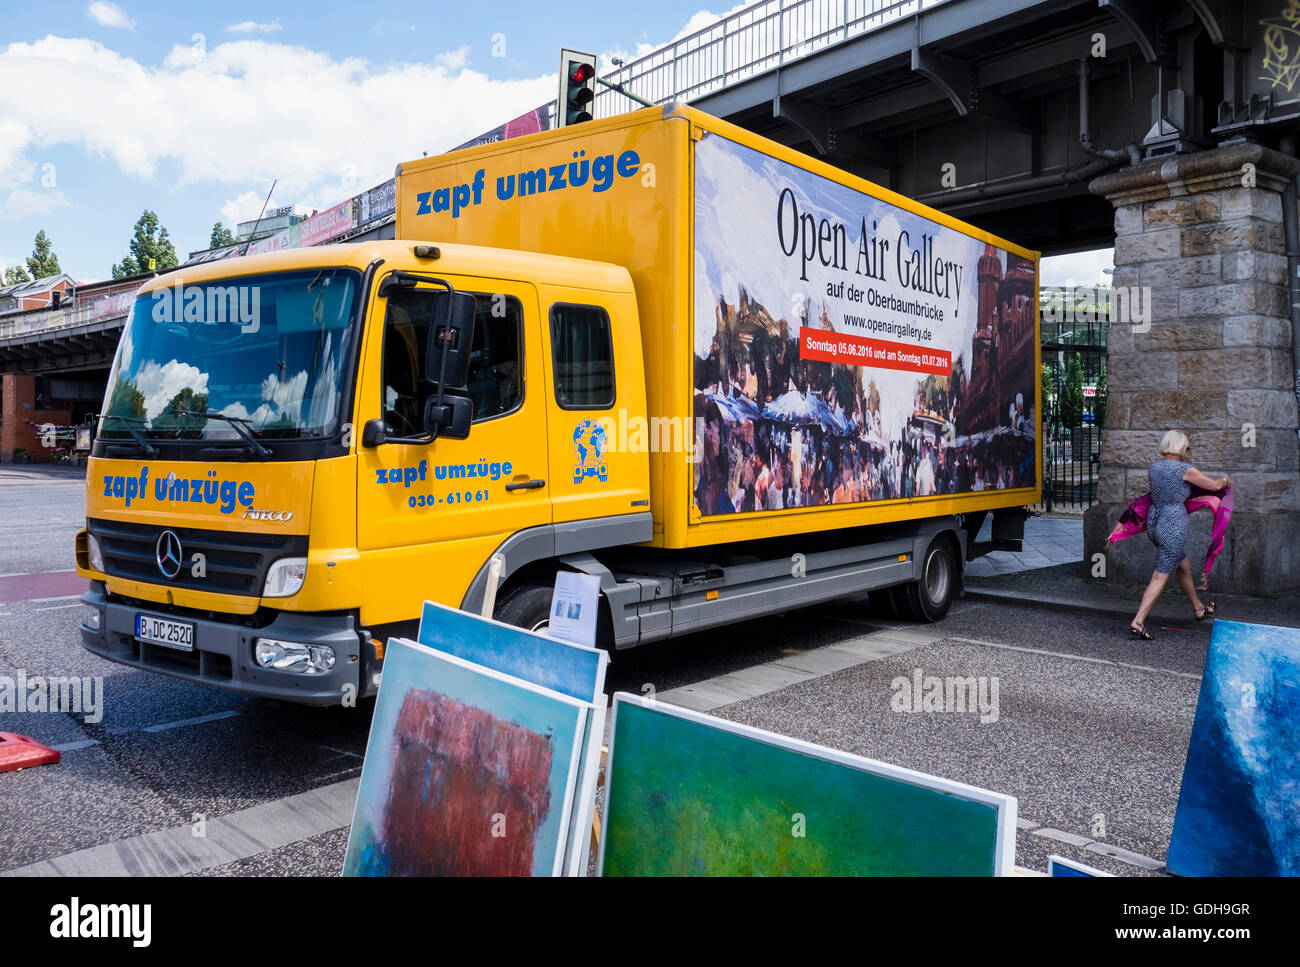 Open Air Galerie véhicule bloque la rue pour l'Oberbaumbrücke exposition annuelle en plein air sur le pont historique Banque D'Images